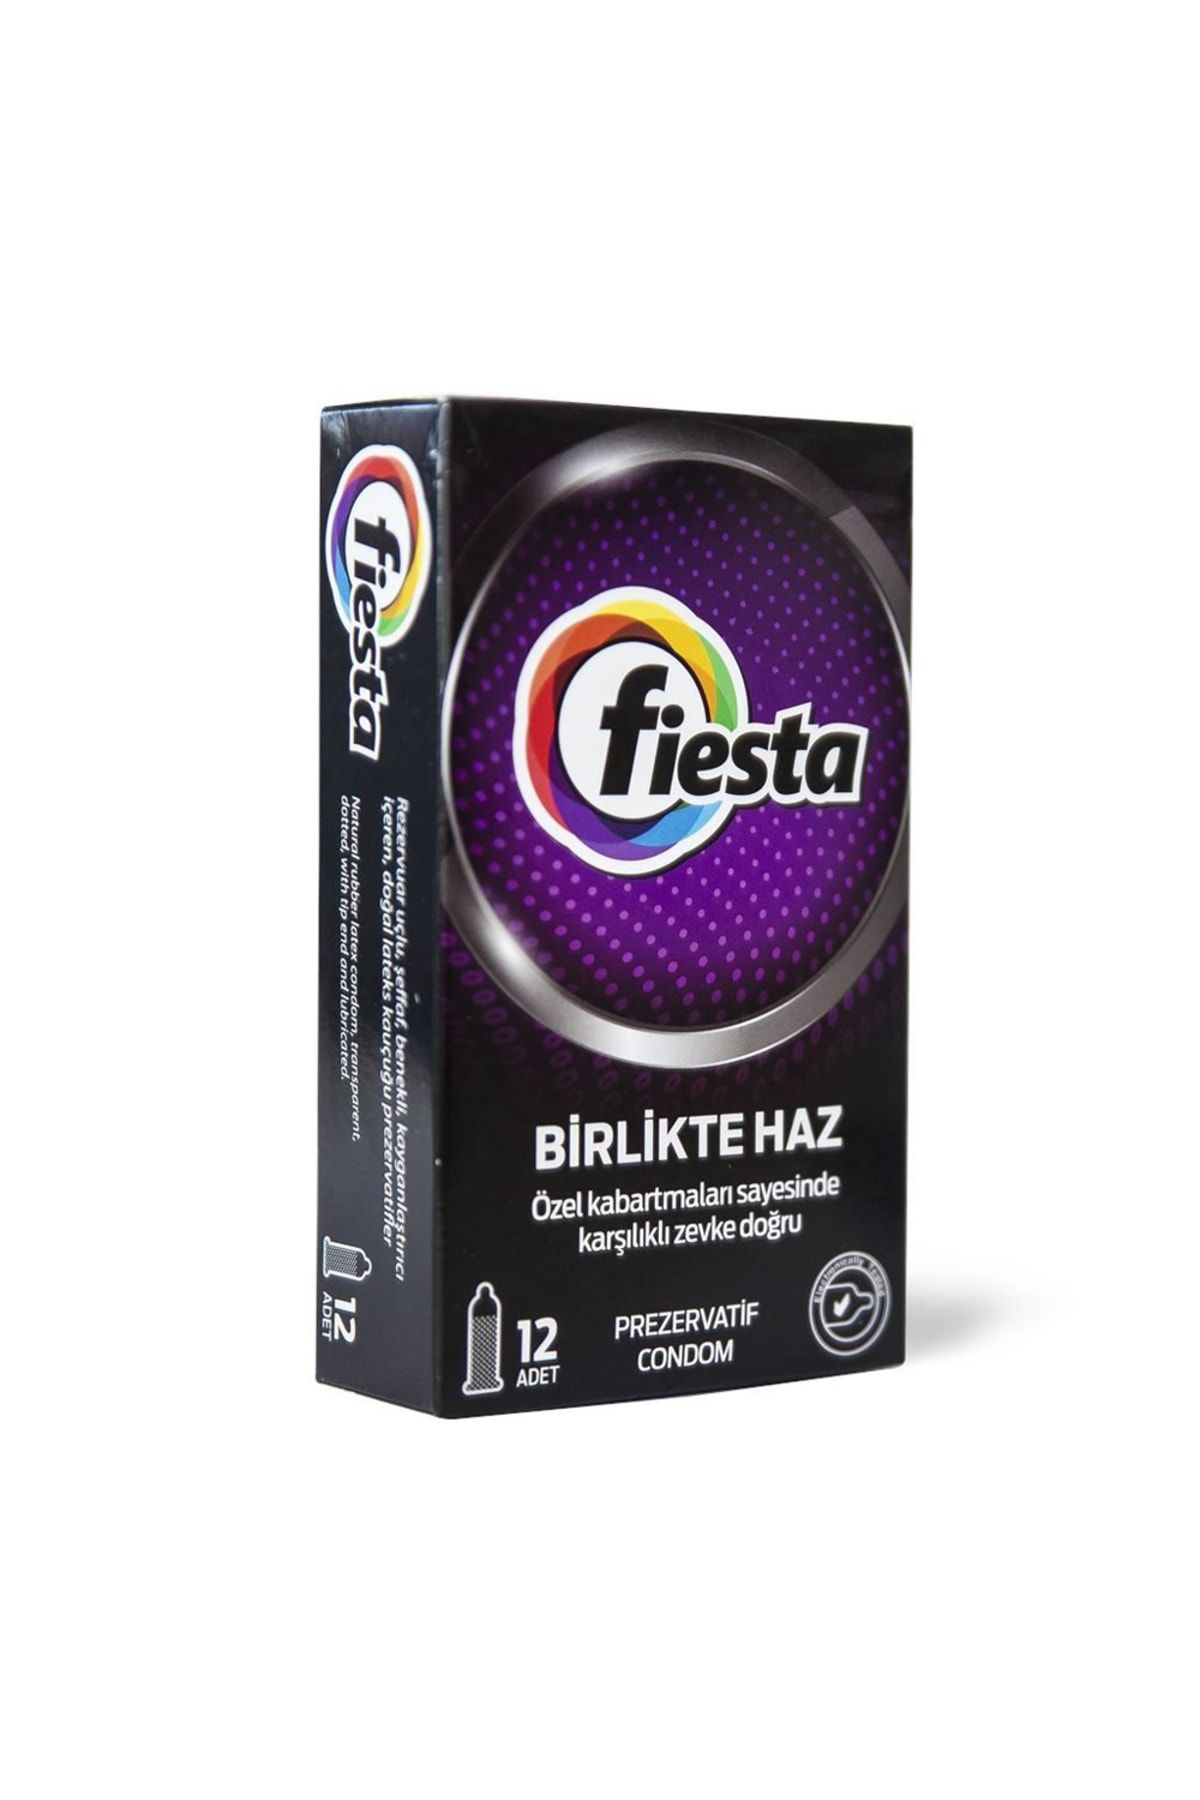 Fiesta Benekli Prezervatif